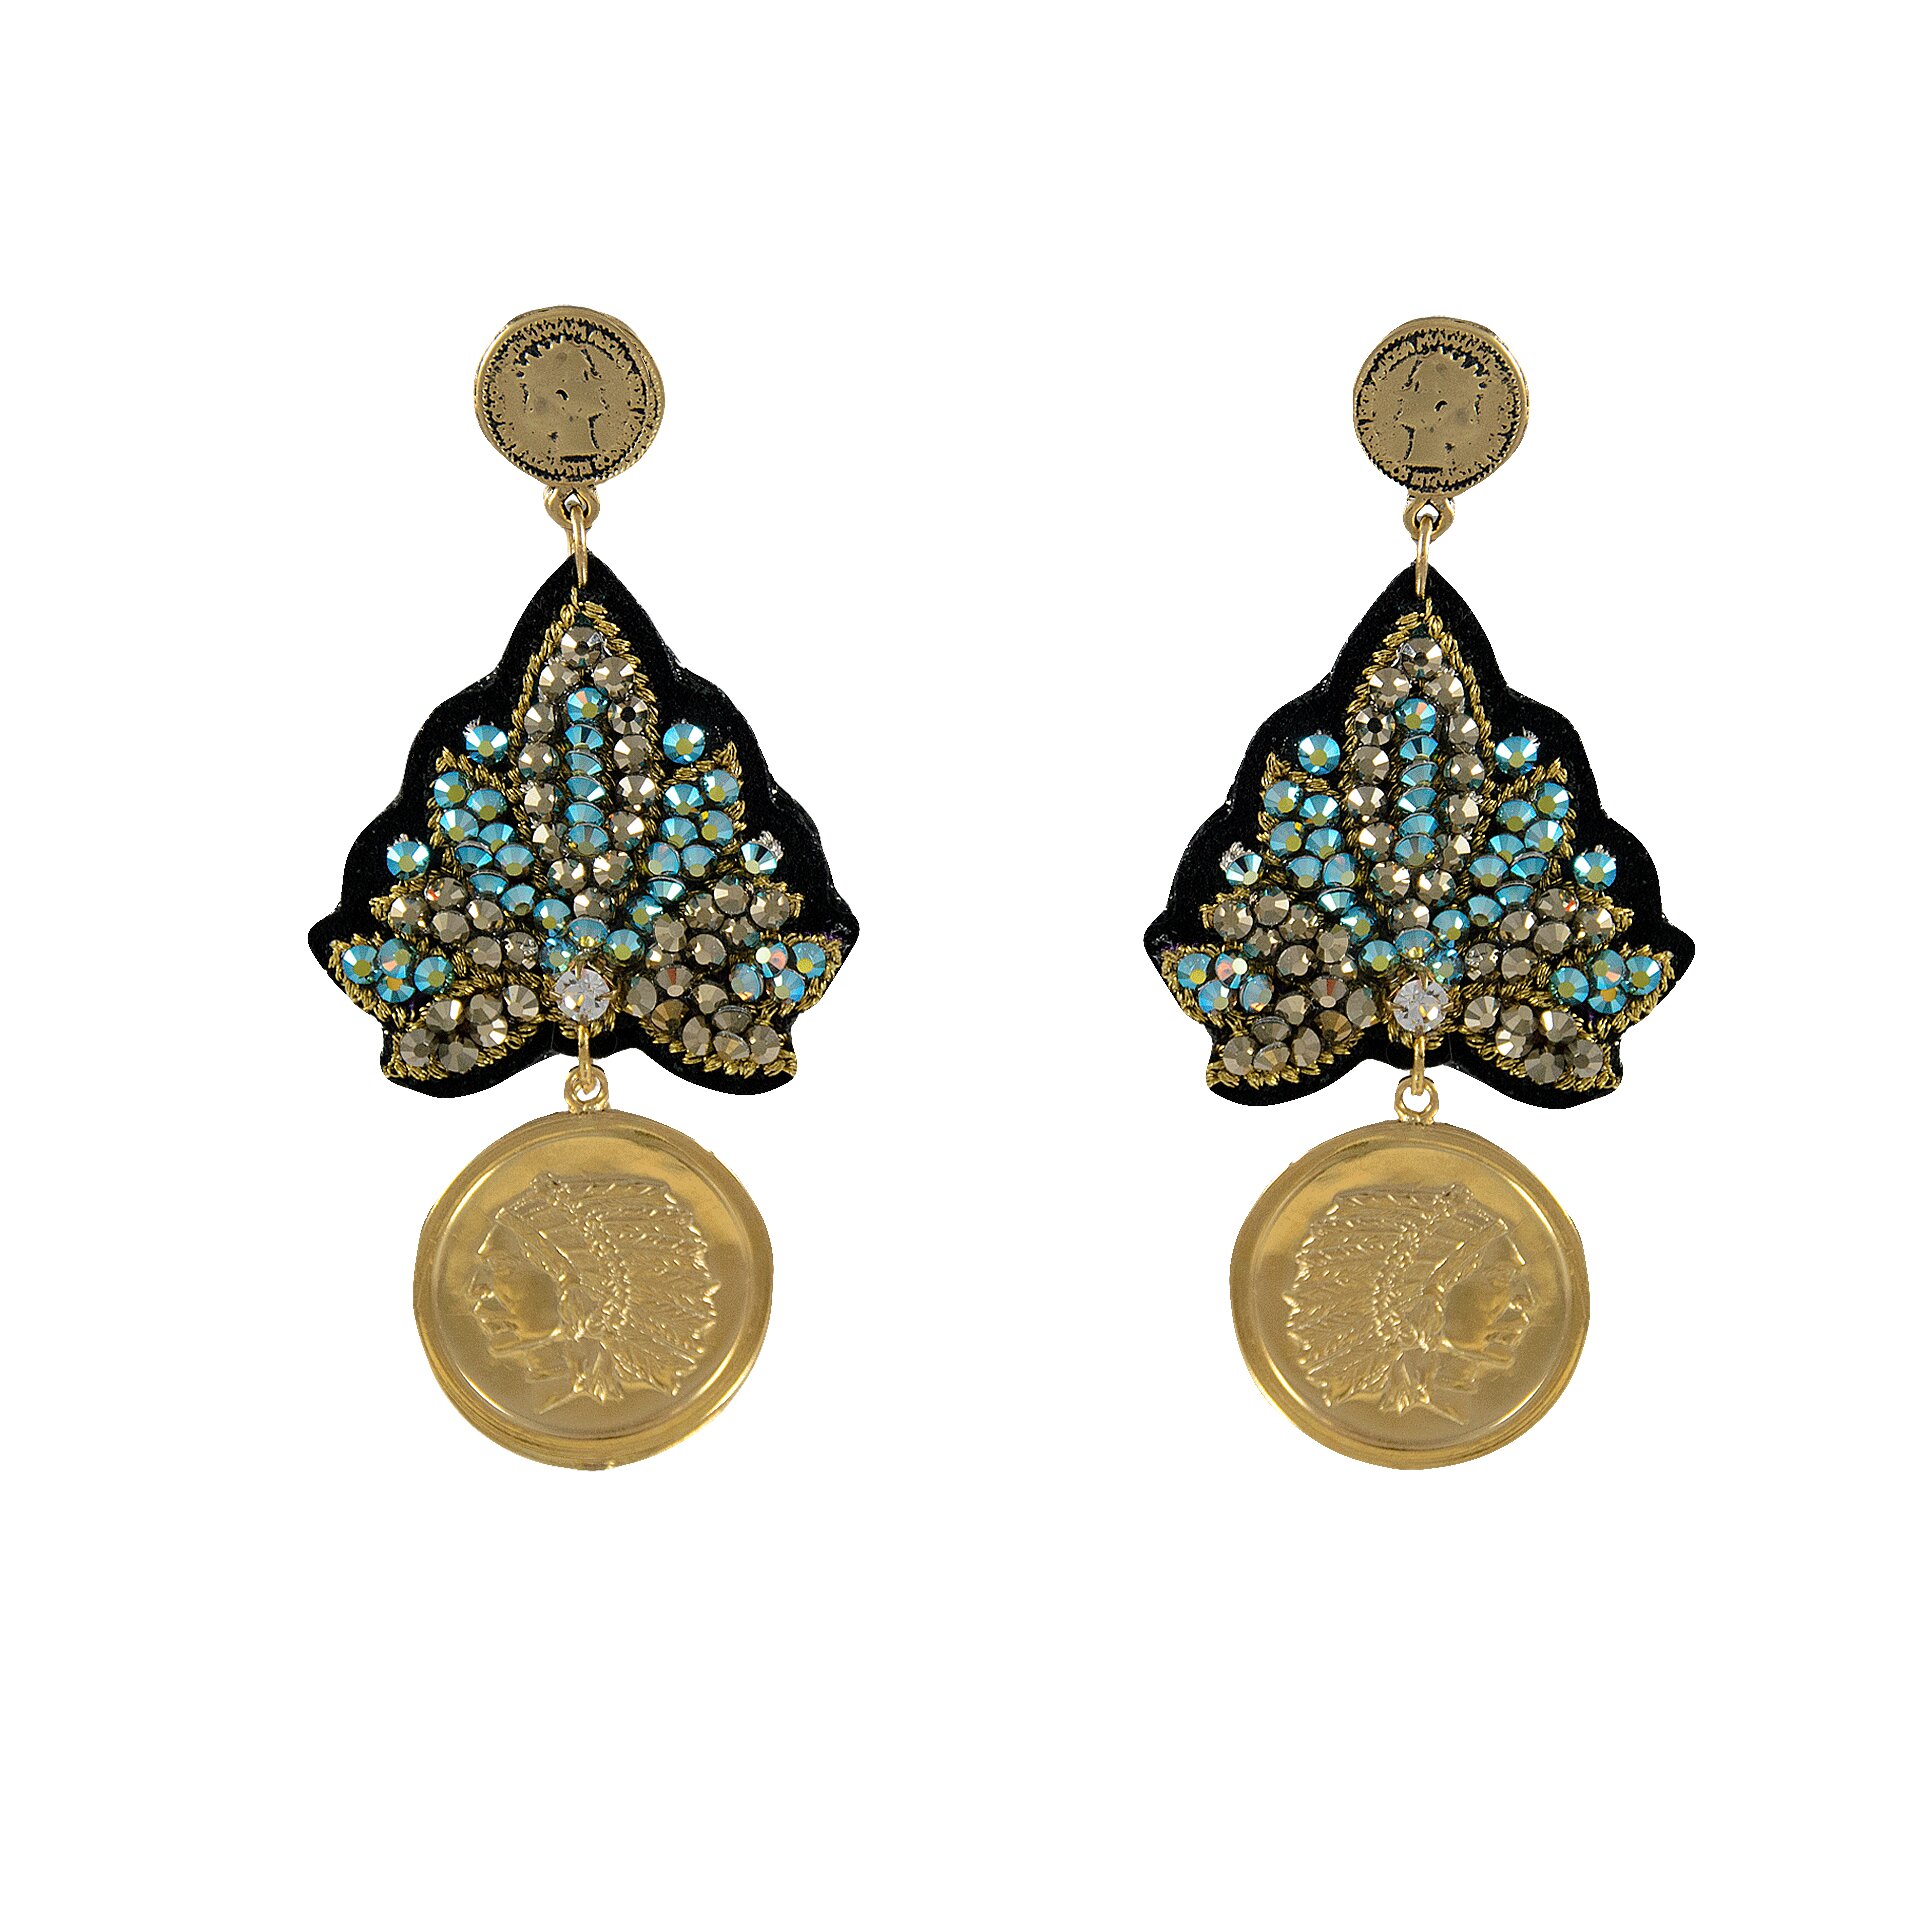 Σκουλαρίκια LINDA'S DREAM ινδικό μπλε με χρυσά στοιχεία